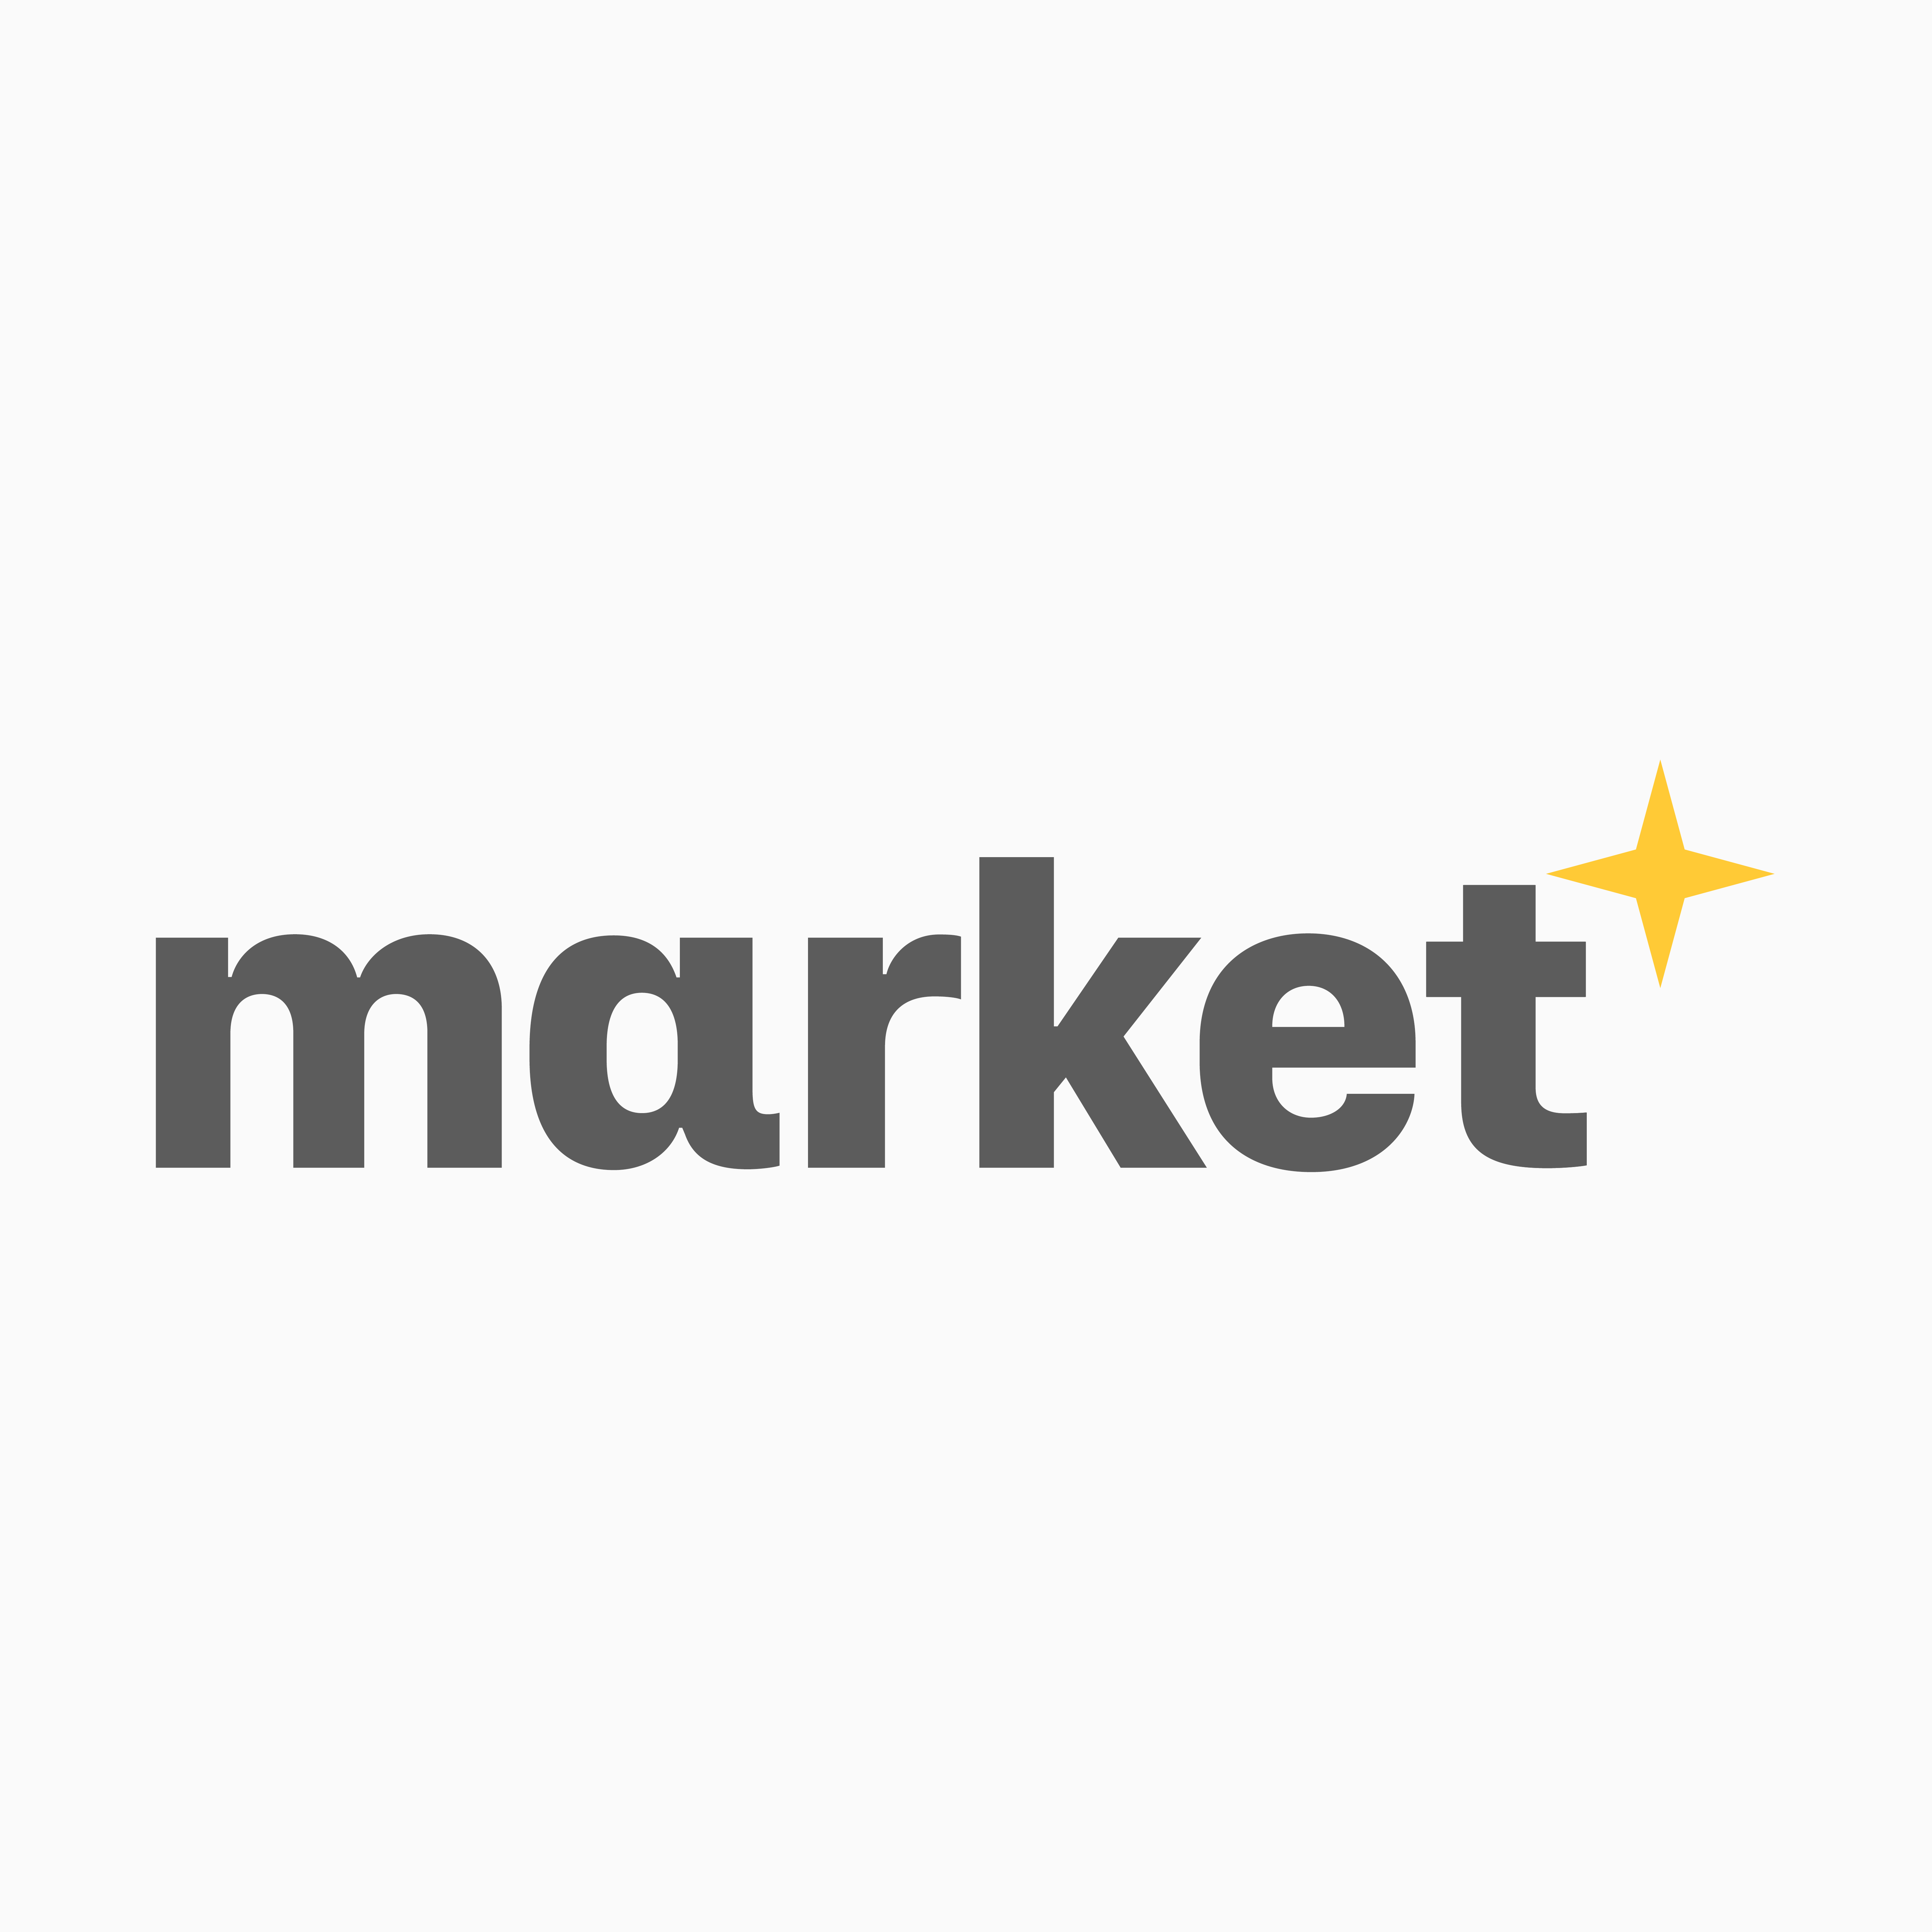 Anamo Market wordmark (logotype)